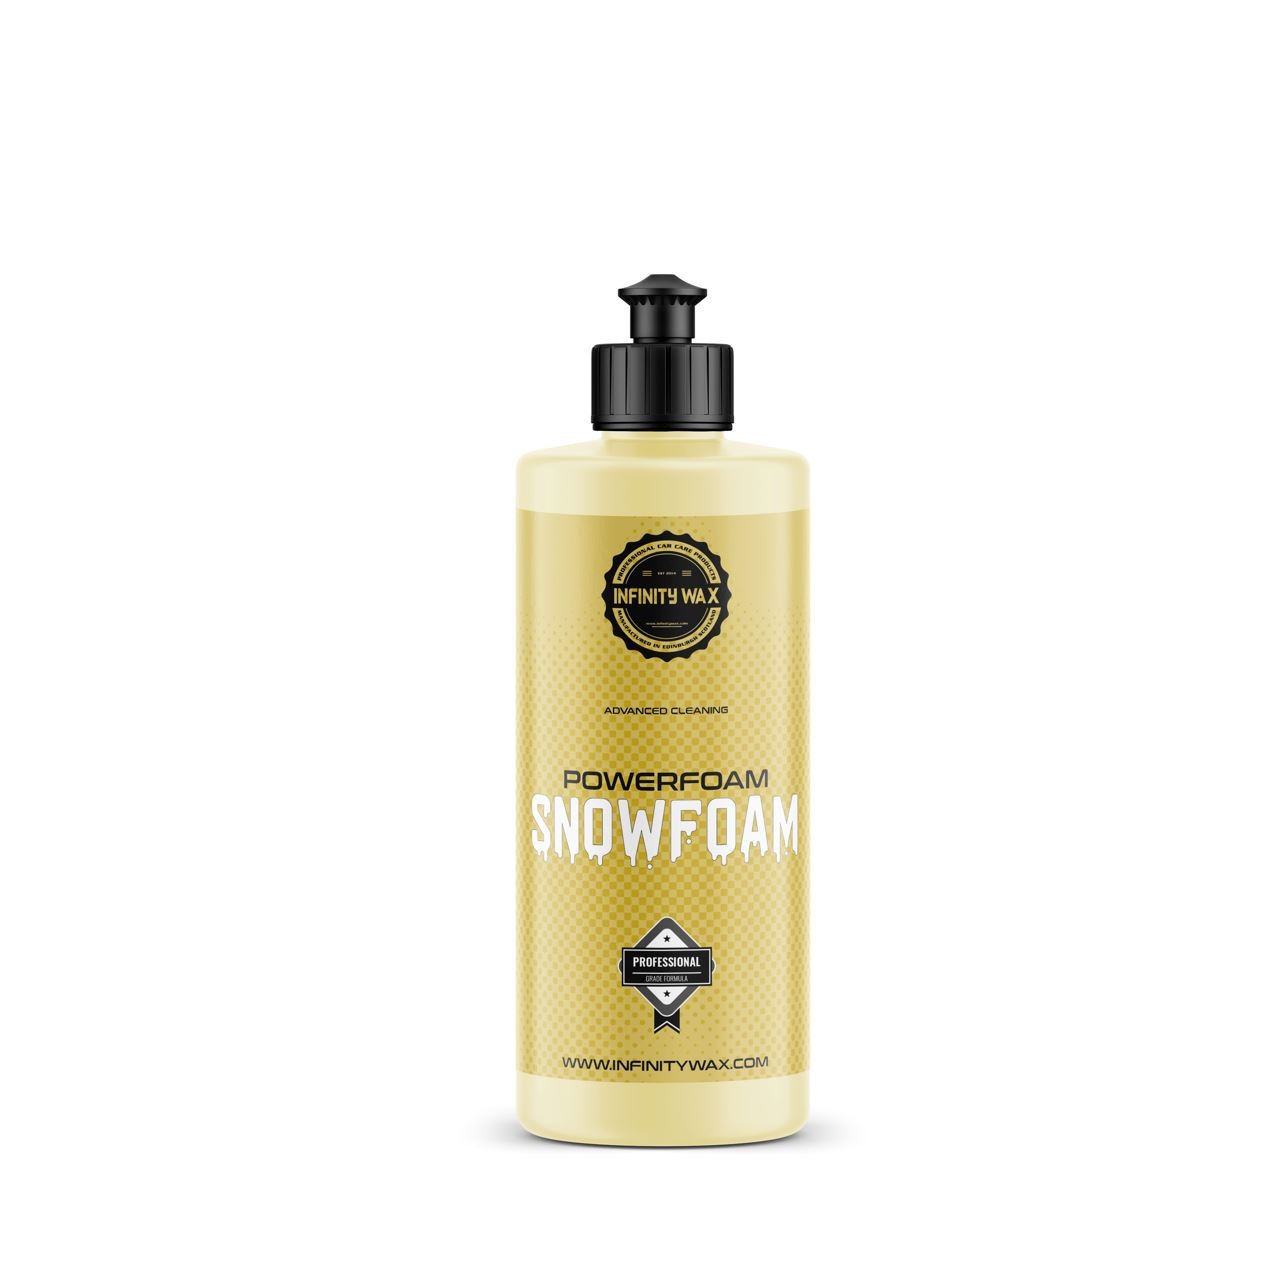 Aktivní pěna Infinity Wax PowerFoam Snowfoam (500 ml)